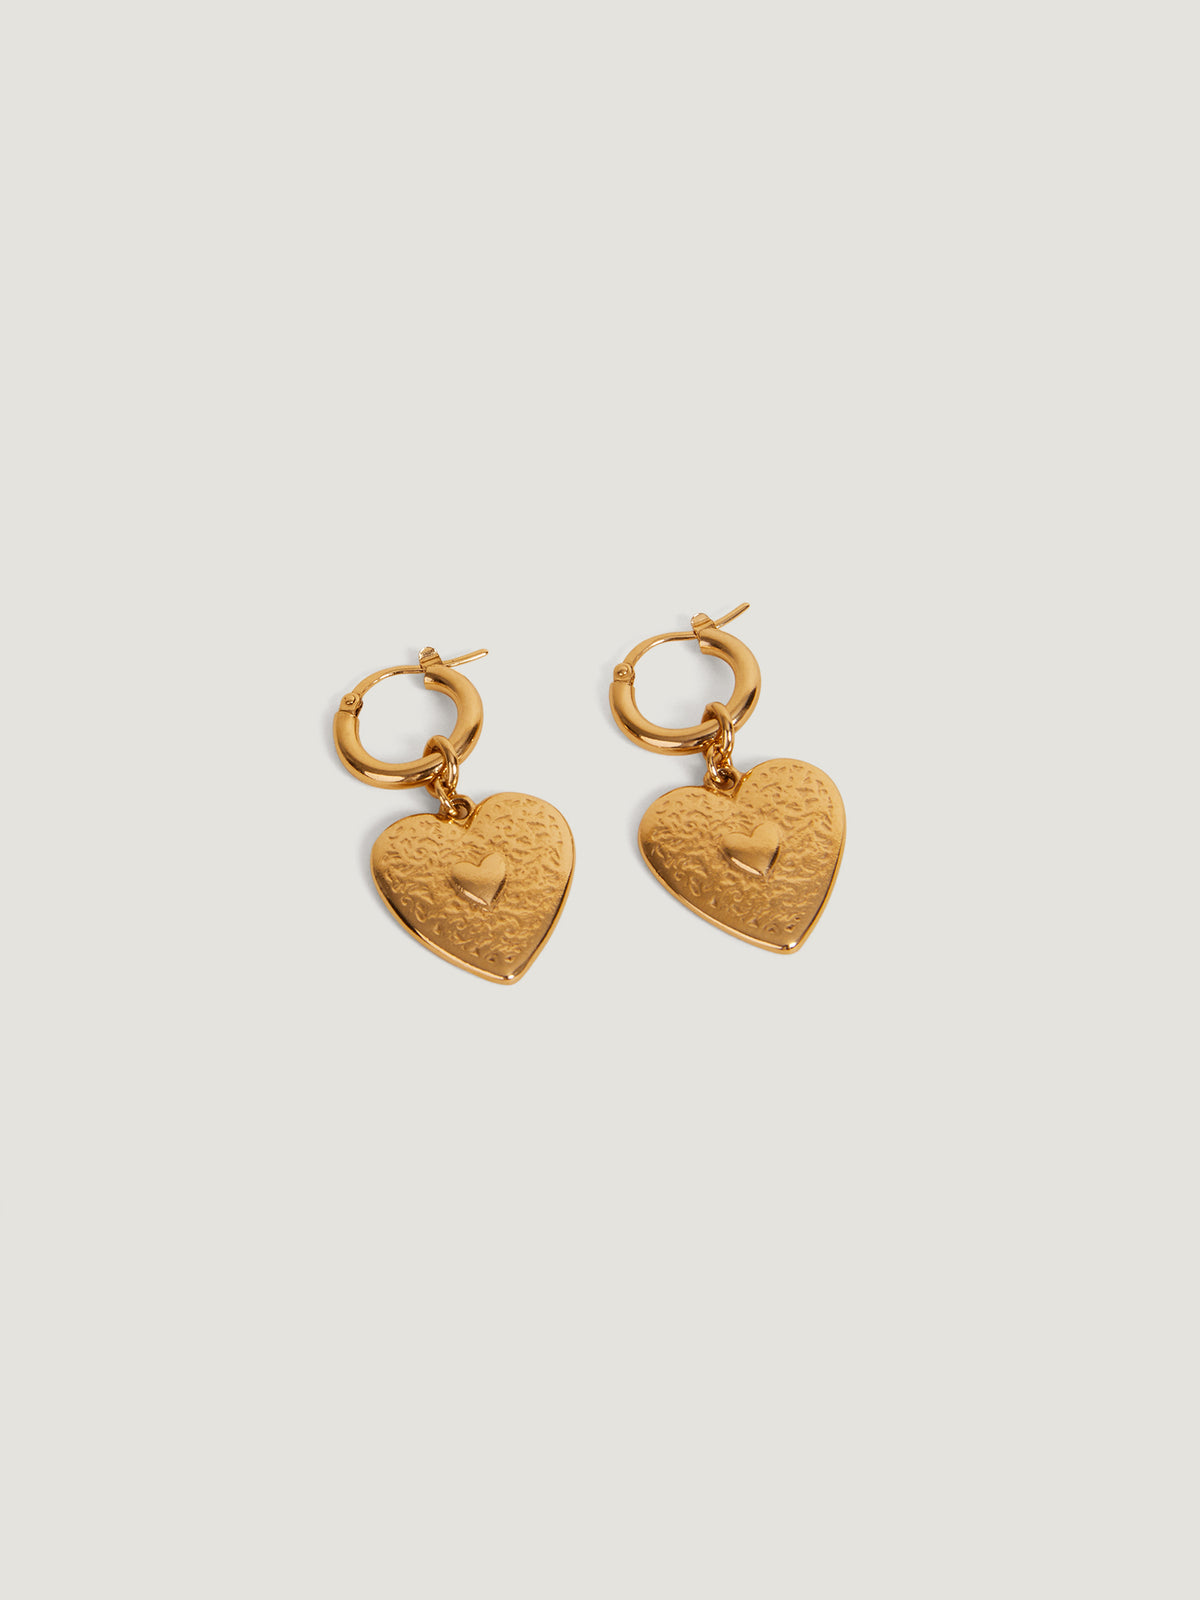 LOUIS VUITTON Earrings Bookreille Gold Pink Blue Flower Heart Rare France